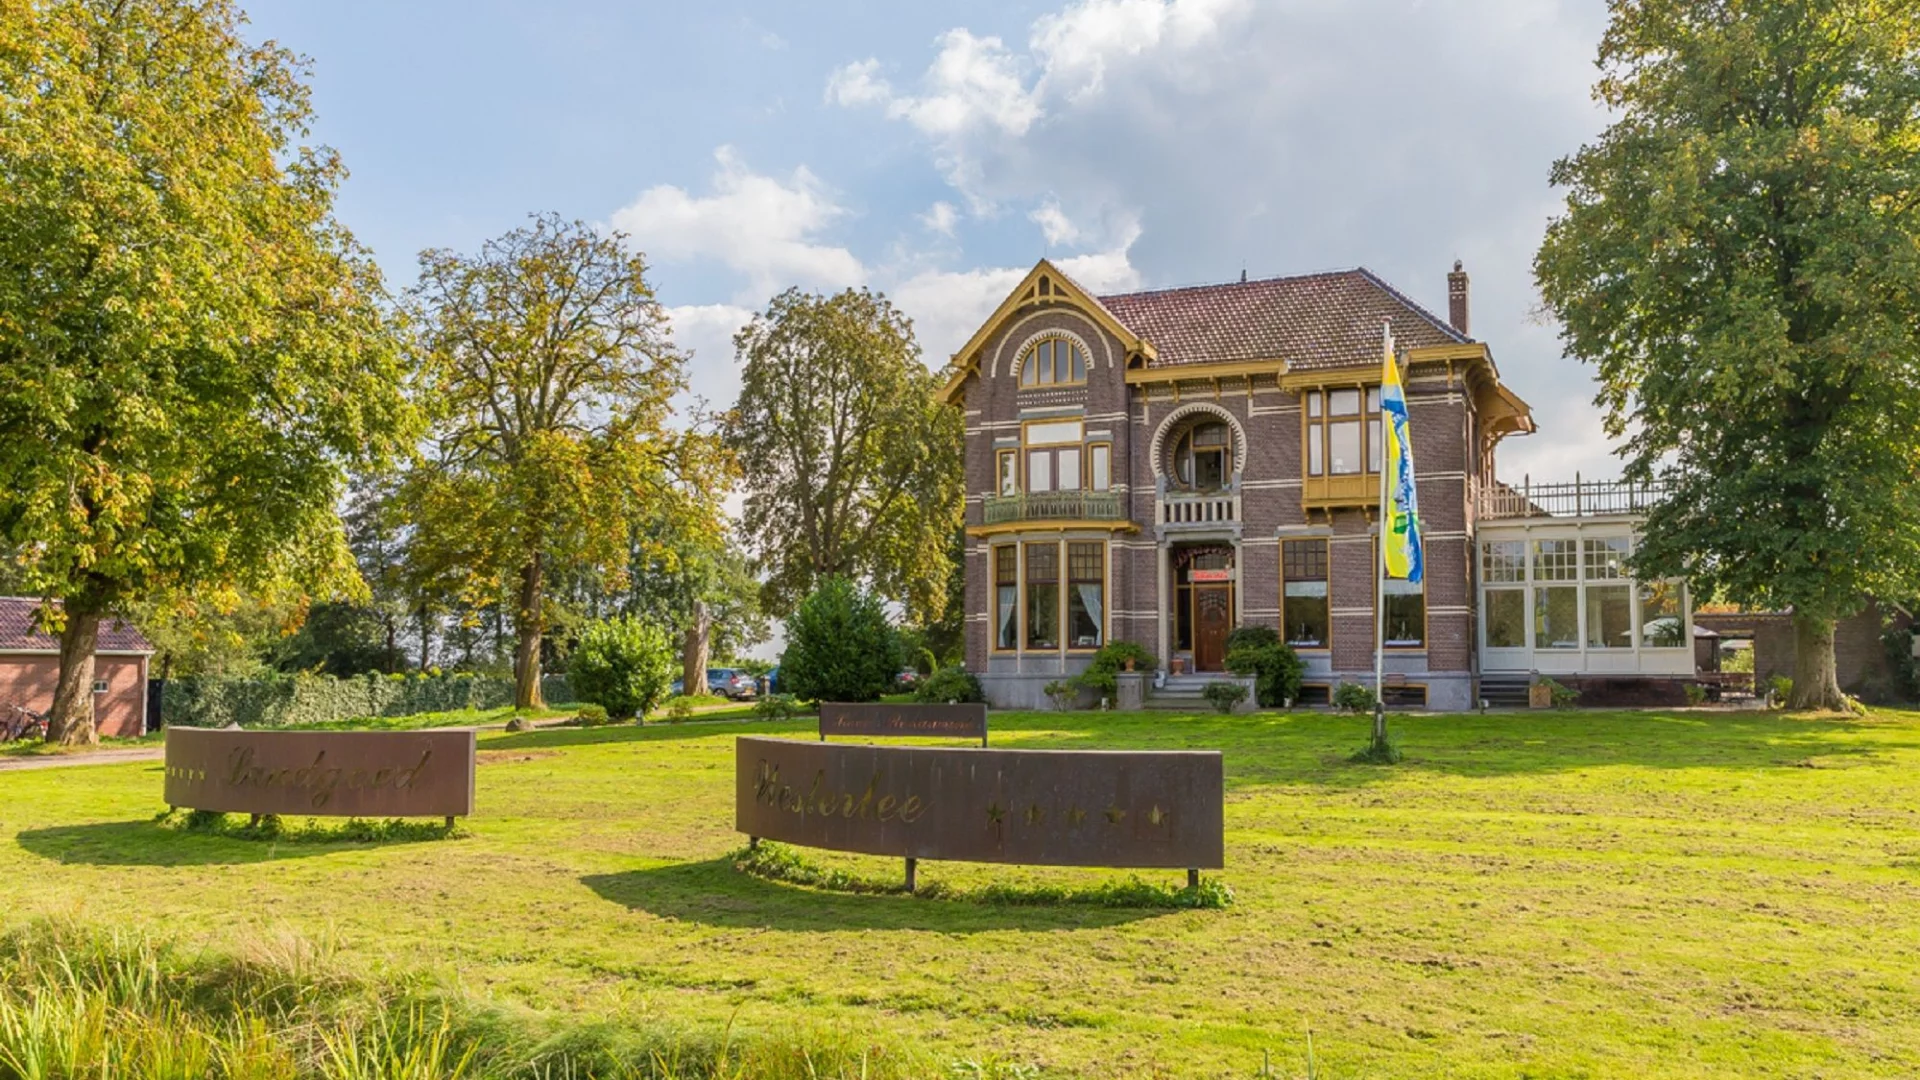 Hotel Landgoed Westerlee in landelijk Groningen